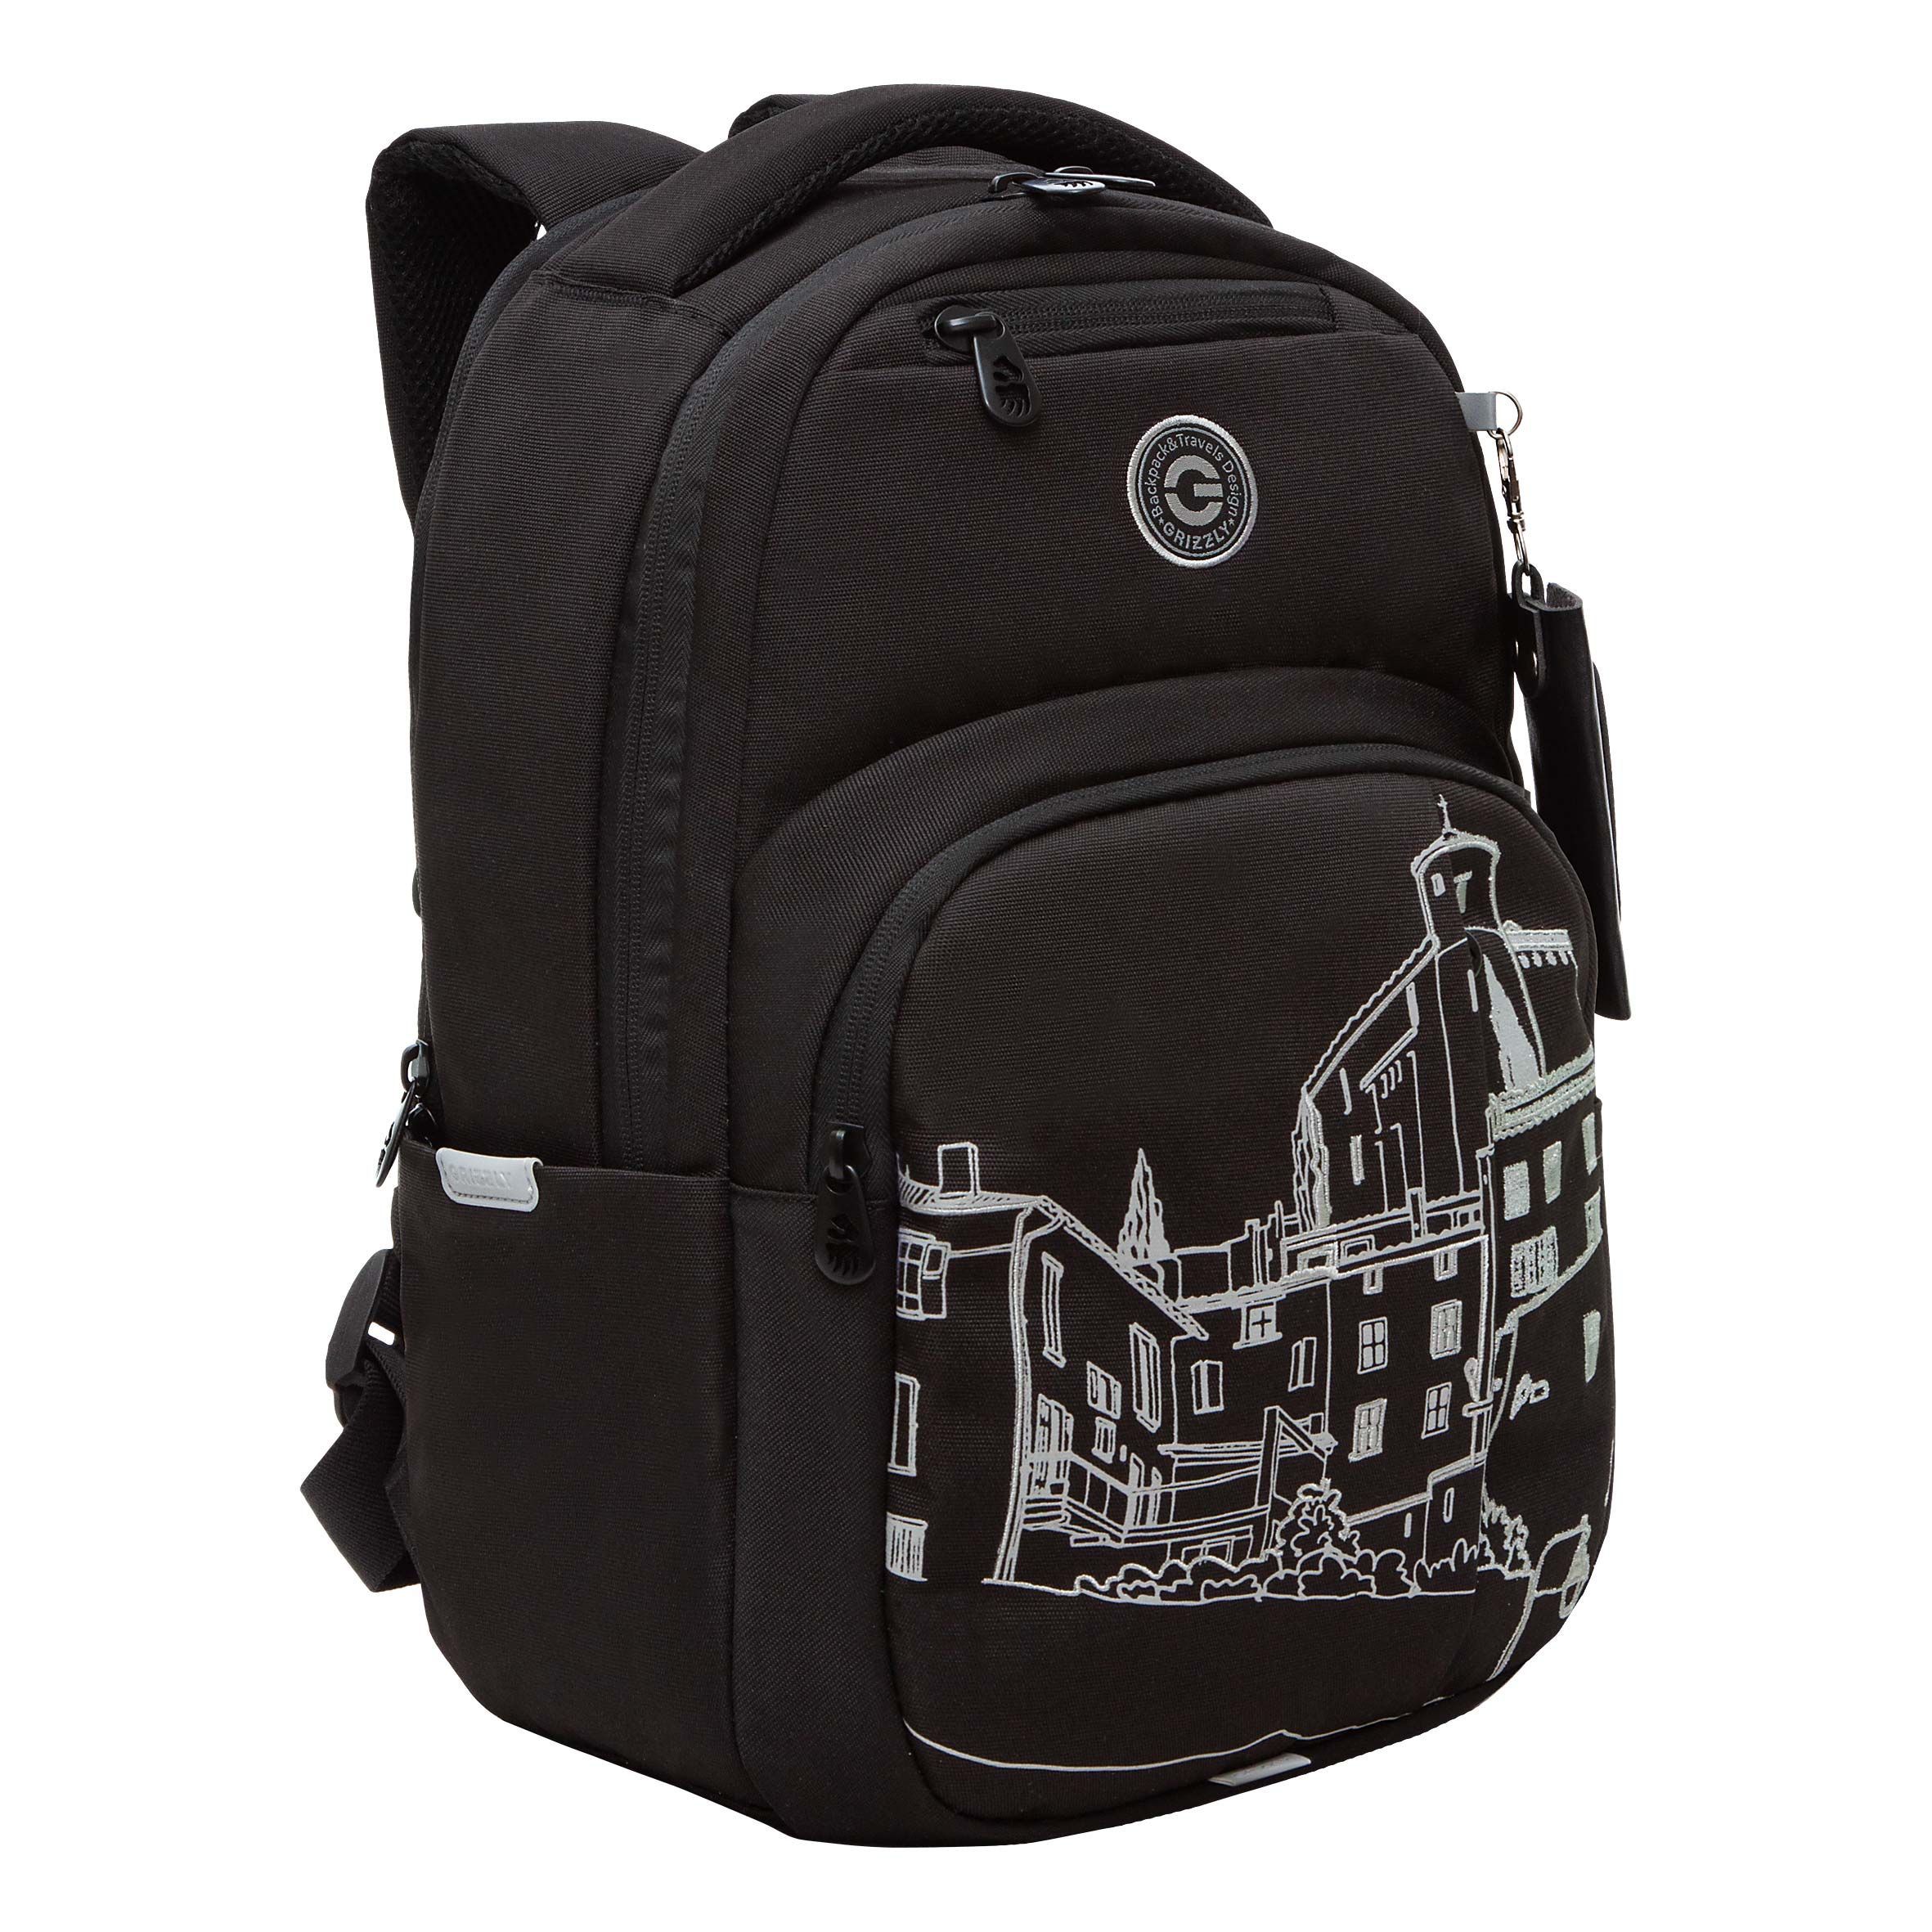 Рюкзак GRIZZLY RD-341-3 стильный городской с отделением для ноутбука 13 женский черный рюкзак женский городской textura бордовый